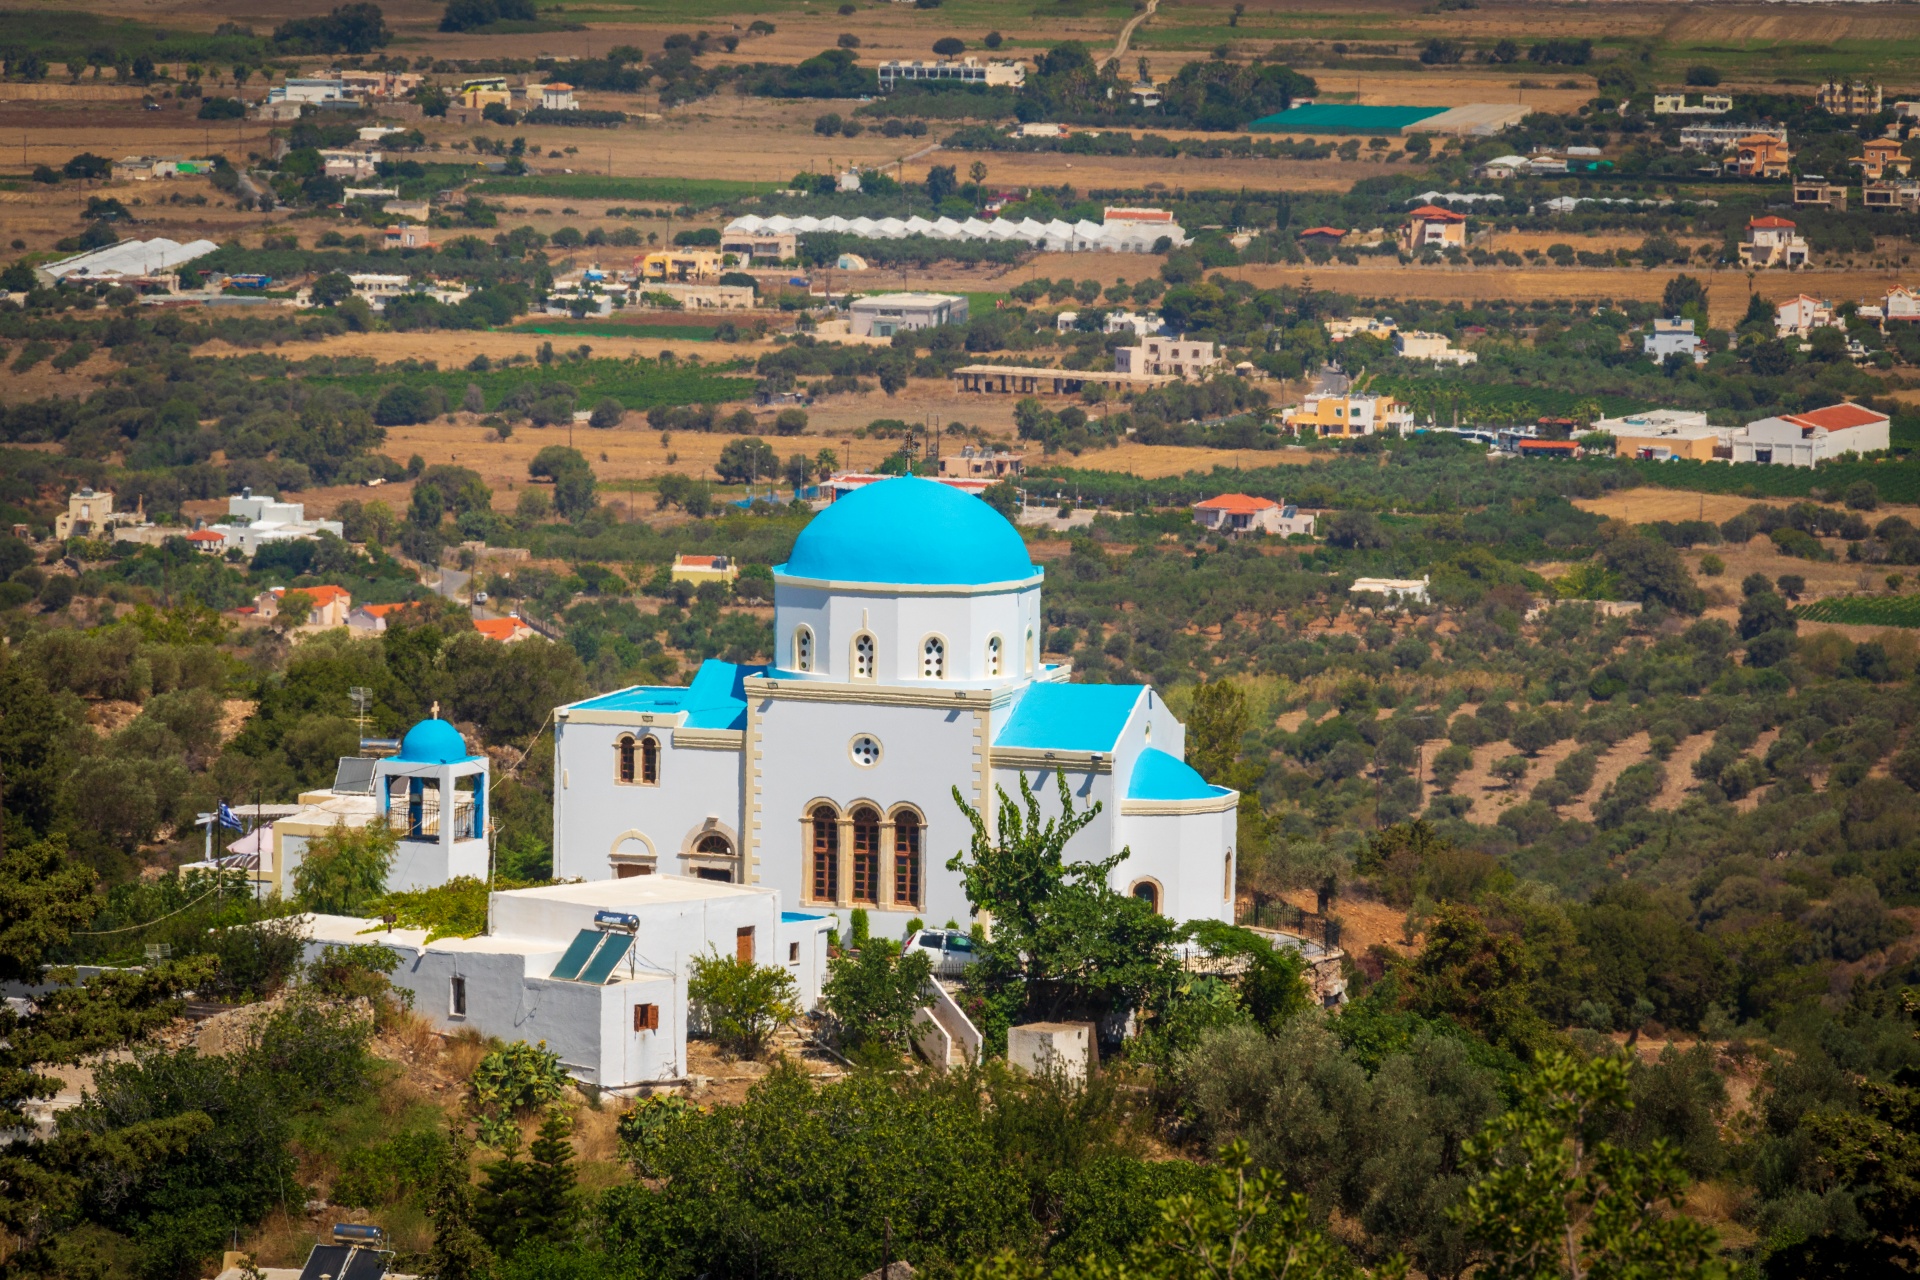 Kimissis tis Theotokou church in Zia, Kos, Greece